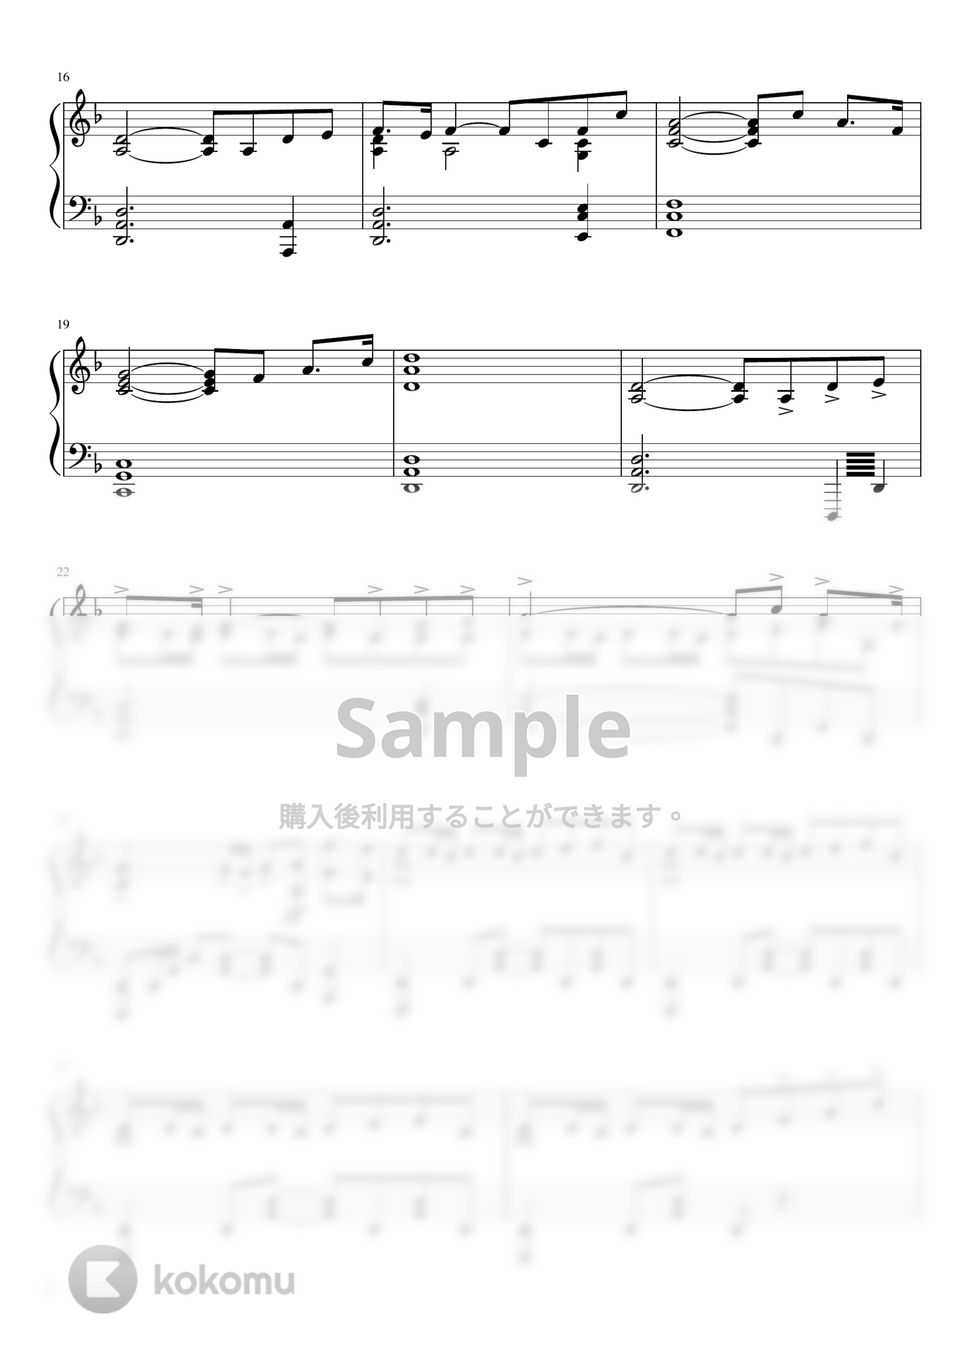 ドラマ『マイファミリー』 - 『マイファミリー』サントラ楽譜集 by soup-majo